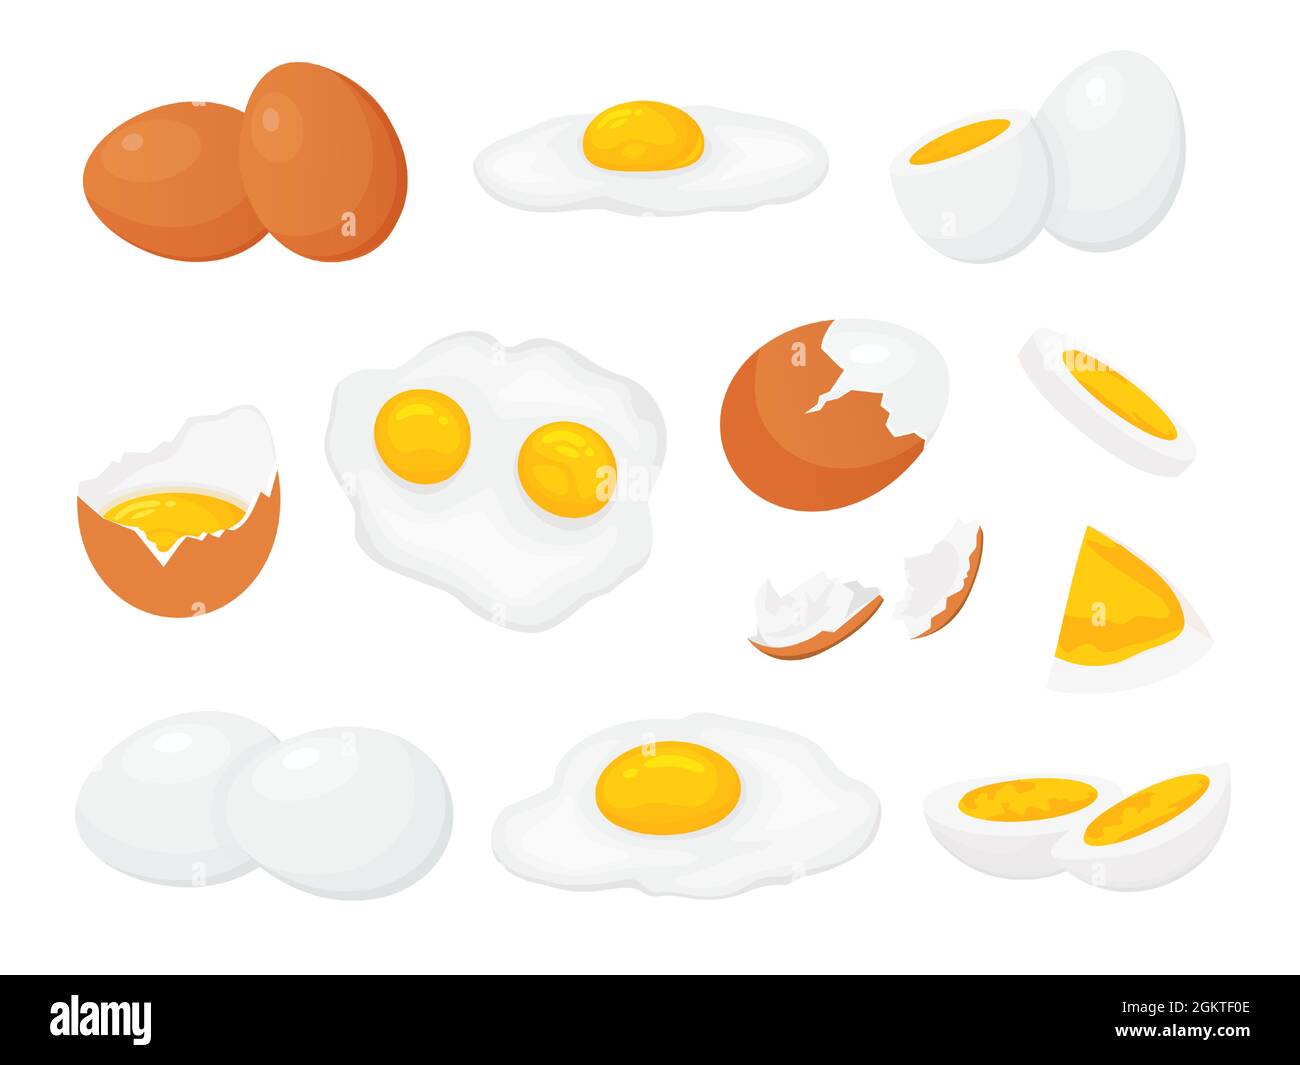 Cartoon rohe, gebrochene gekochte und gebratene Hühnereier mit Eigelb. Frisches Ei in Scheiben, gesprungene Eierschale. Gekochte Eier für Frühstück Vektor-Set Stock Vektor